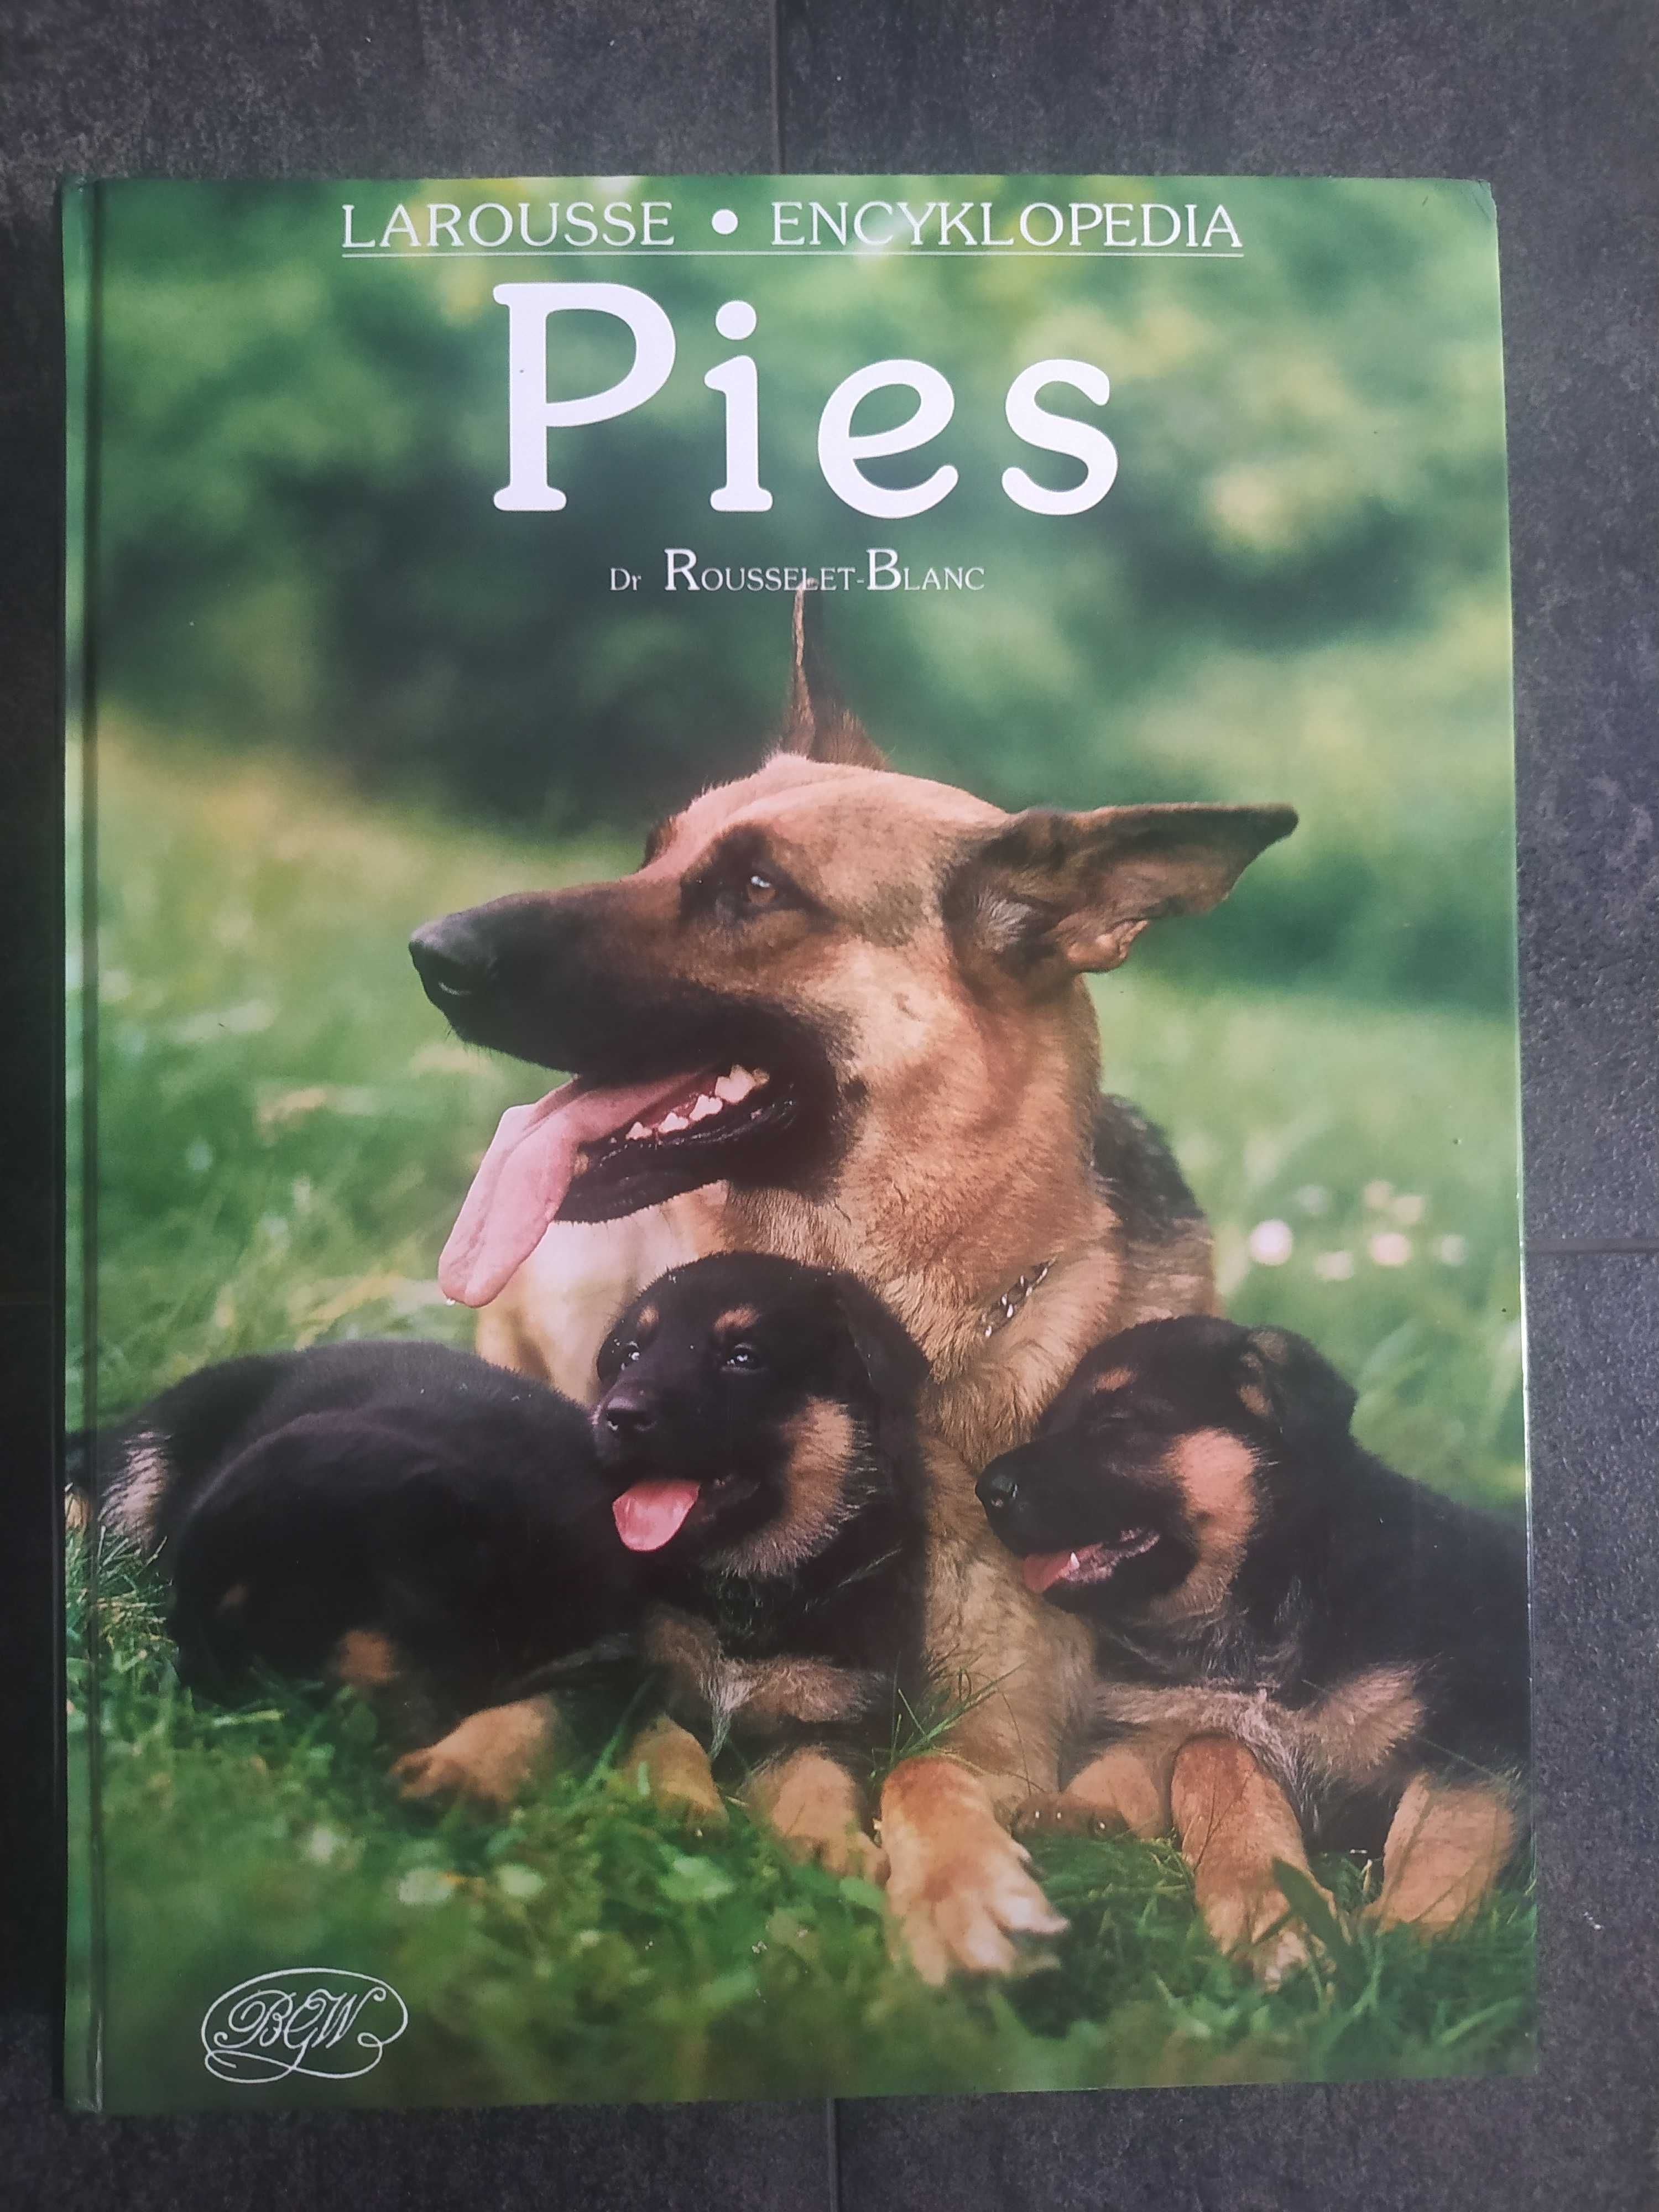 "Pies" P. Rousselet-Blanc, Larousse Encyklopedia